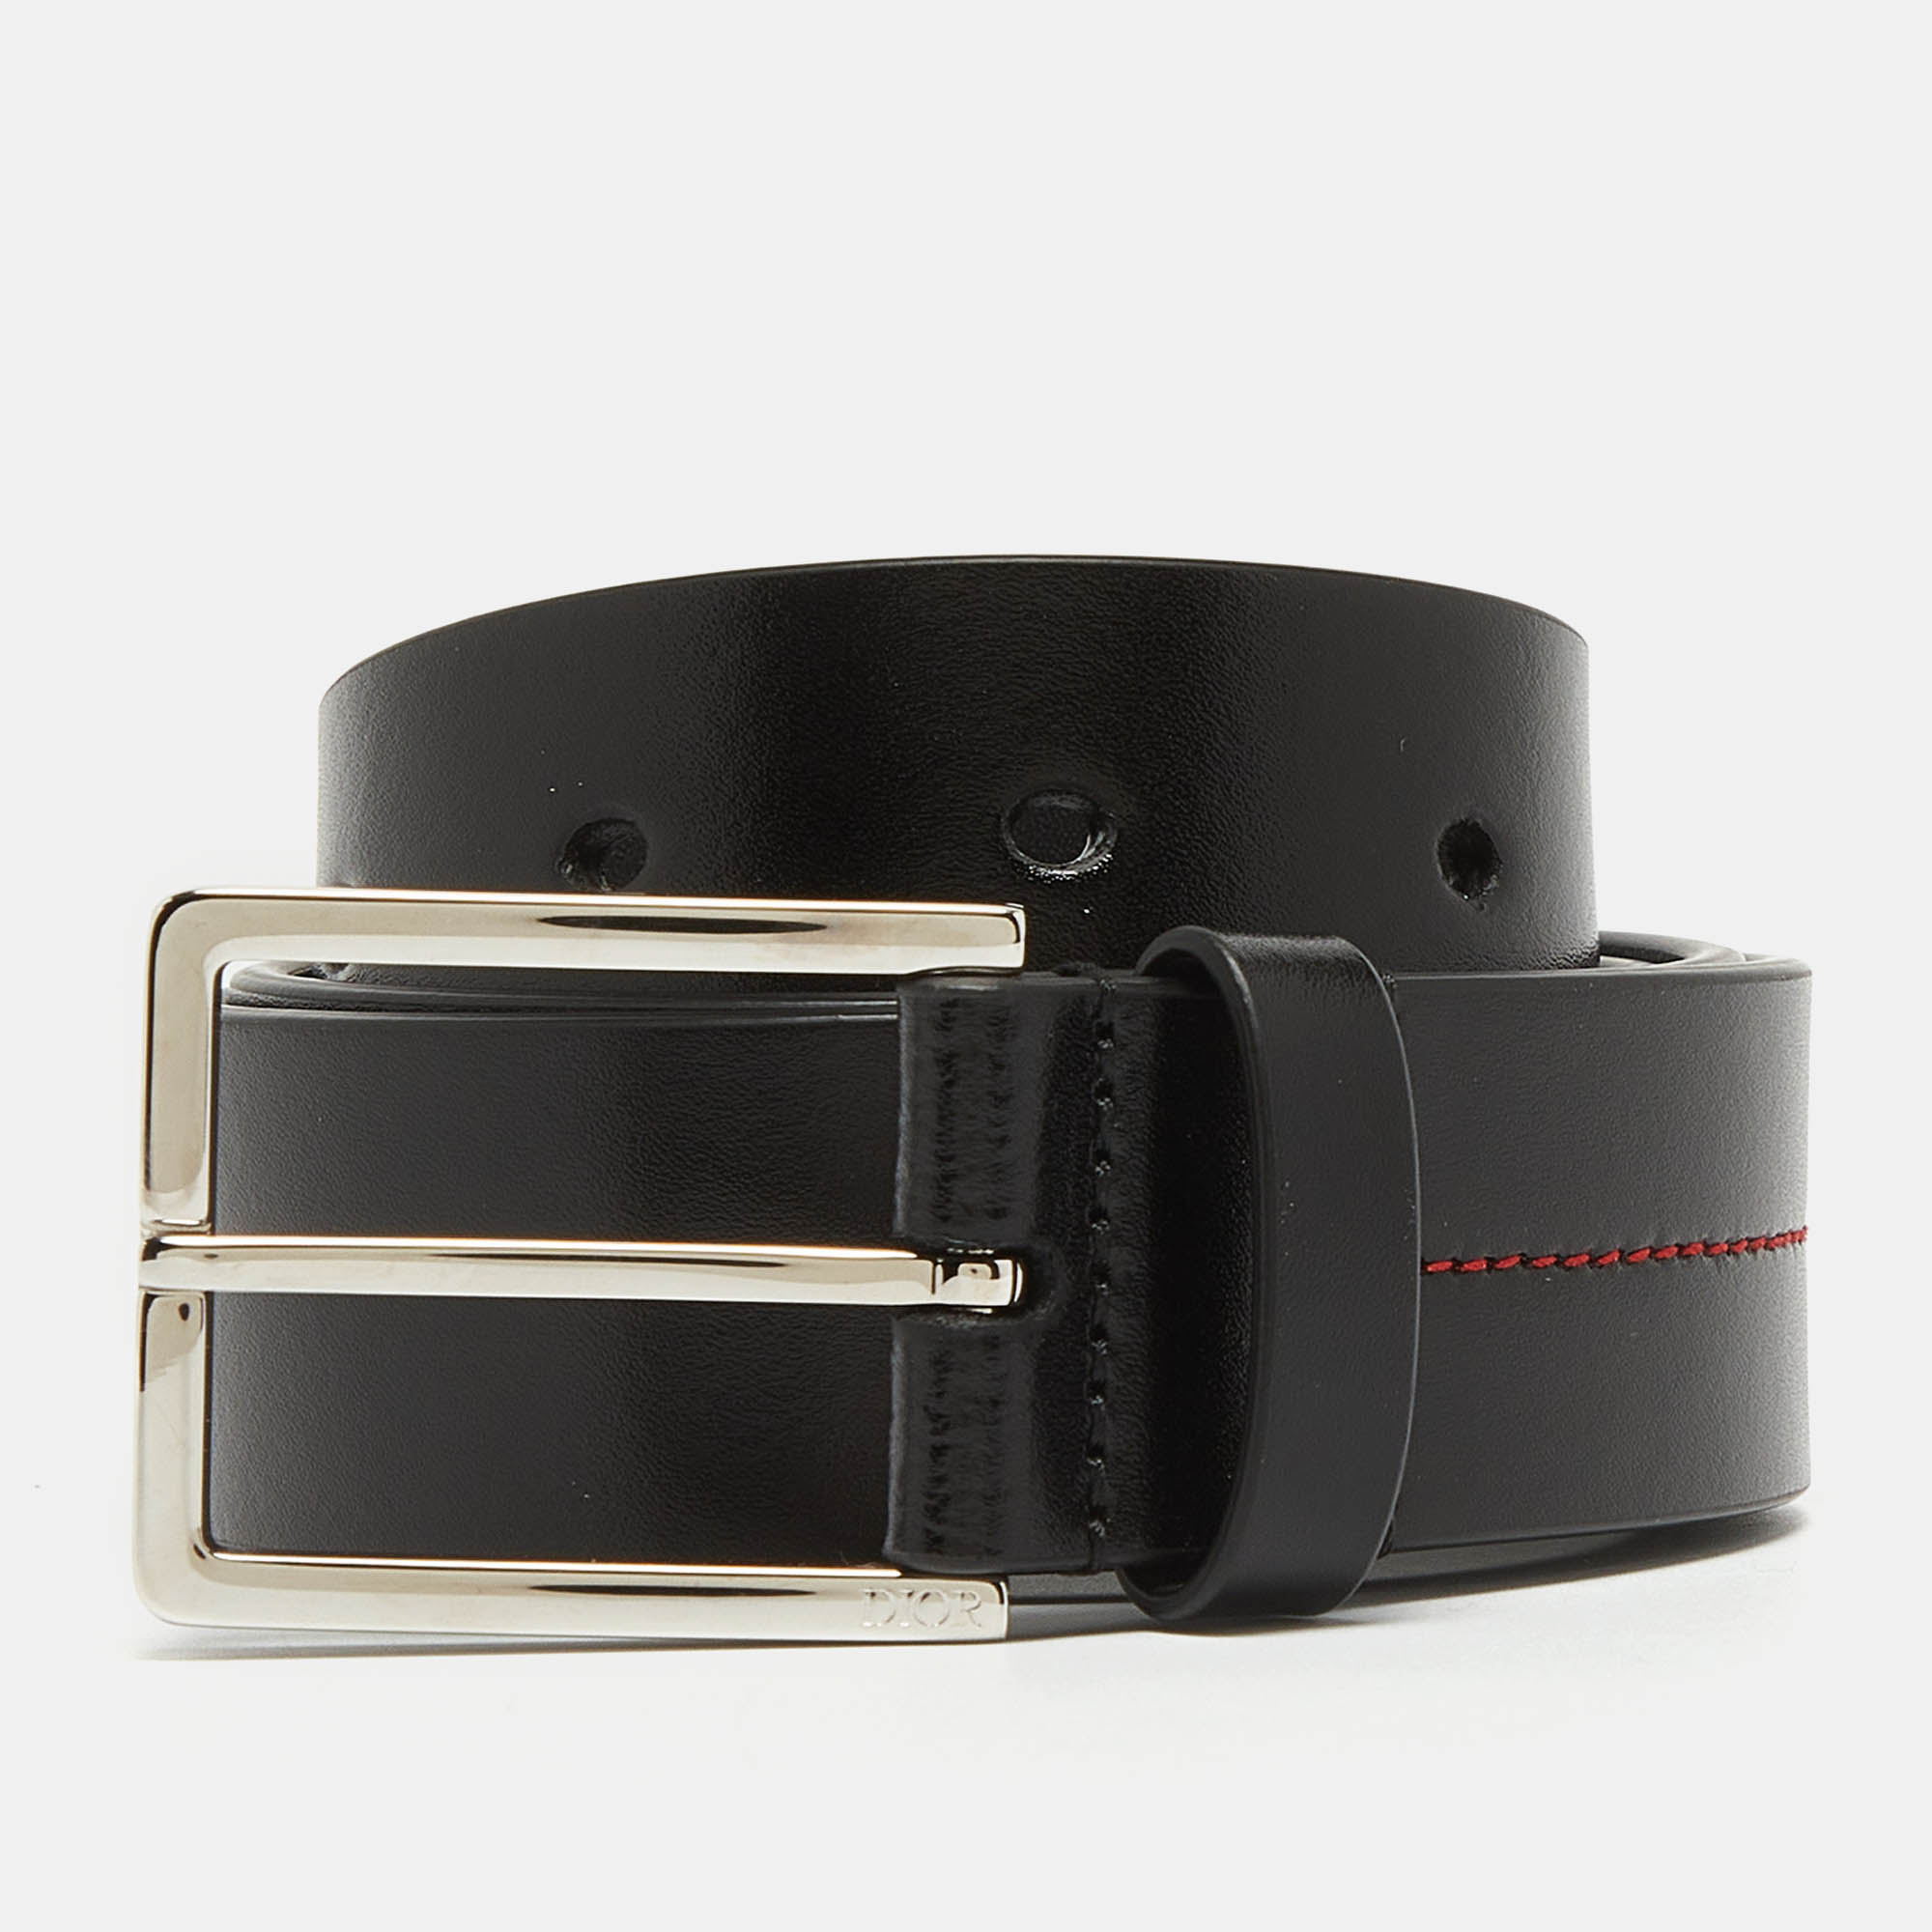 Dior black leather buckle belt 80cm